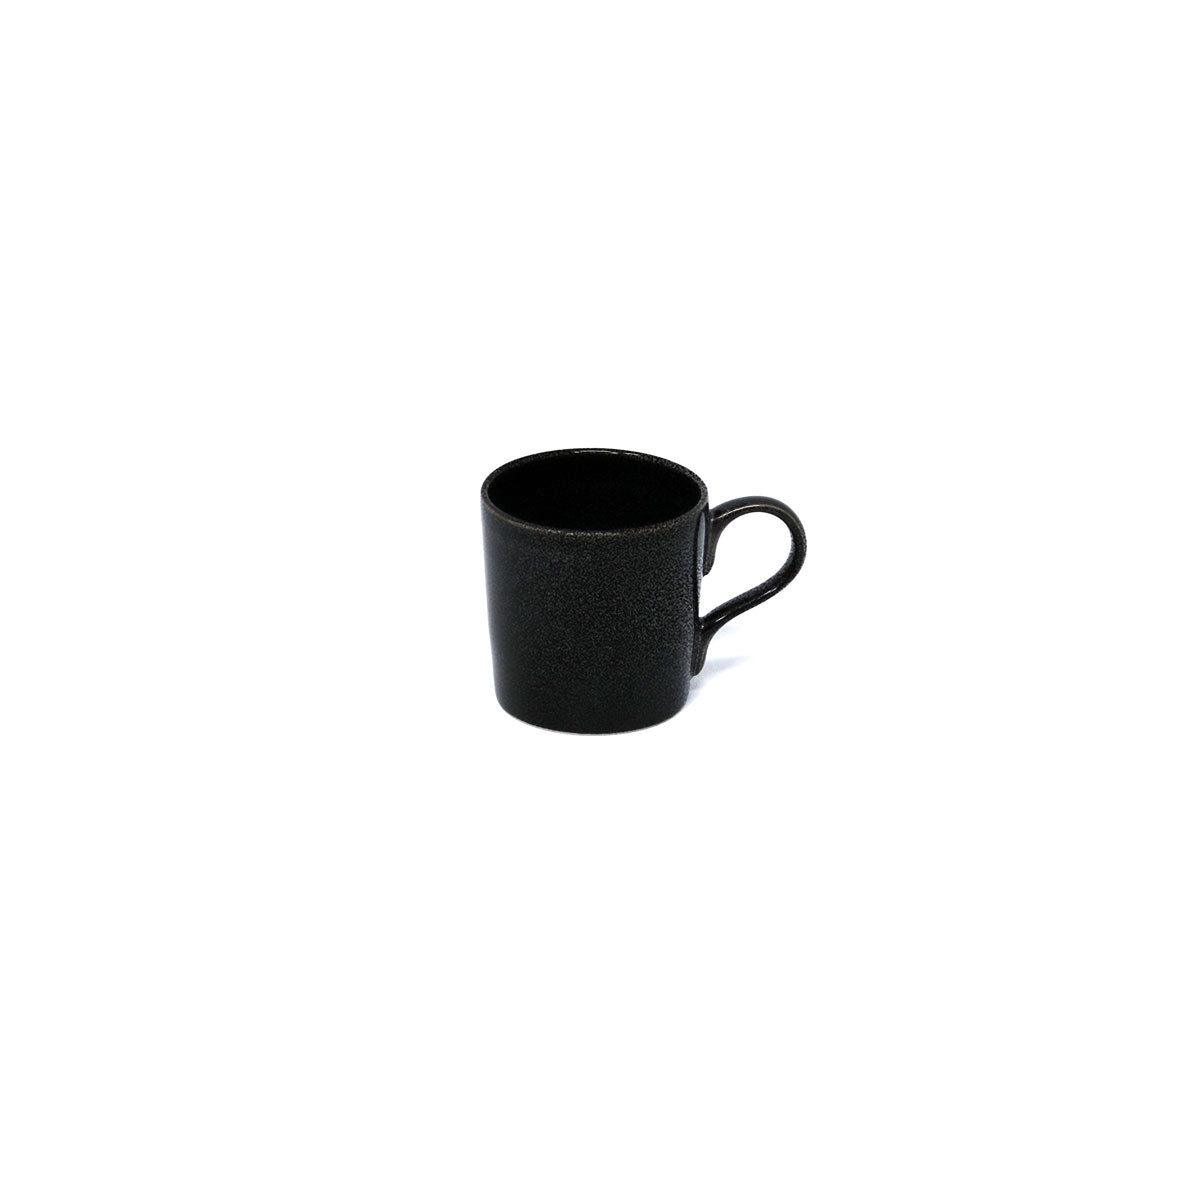 NOIR PAILLETÉ - Coffee set (cup & saucer)